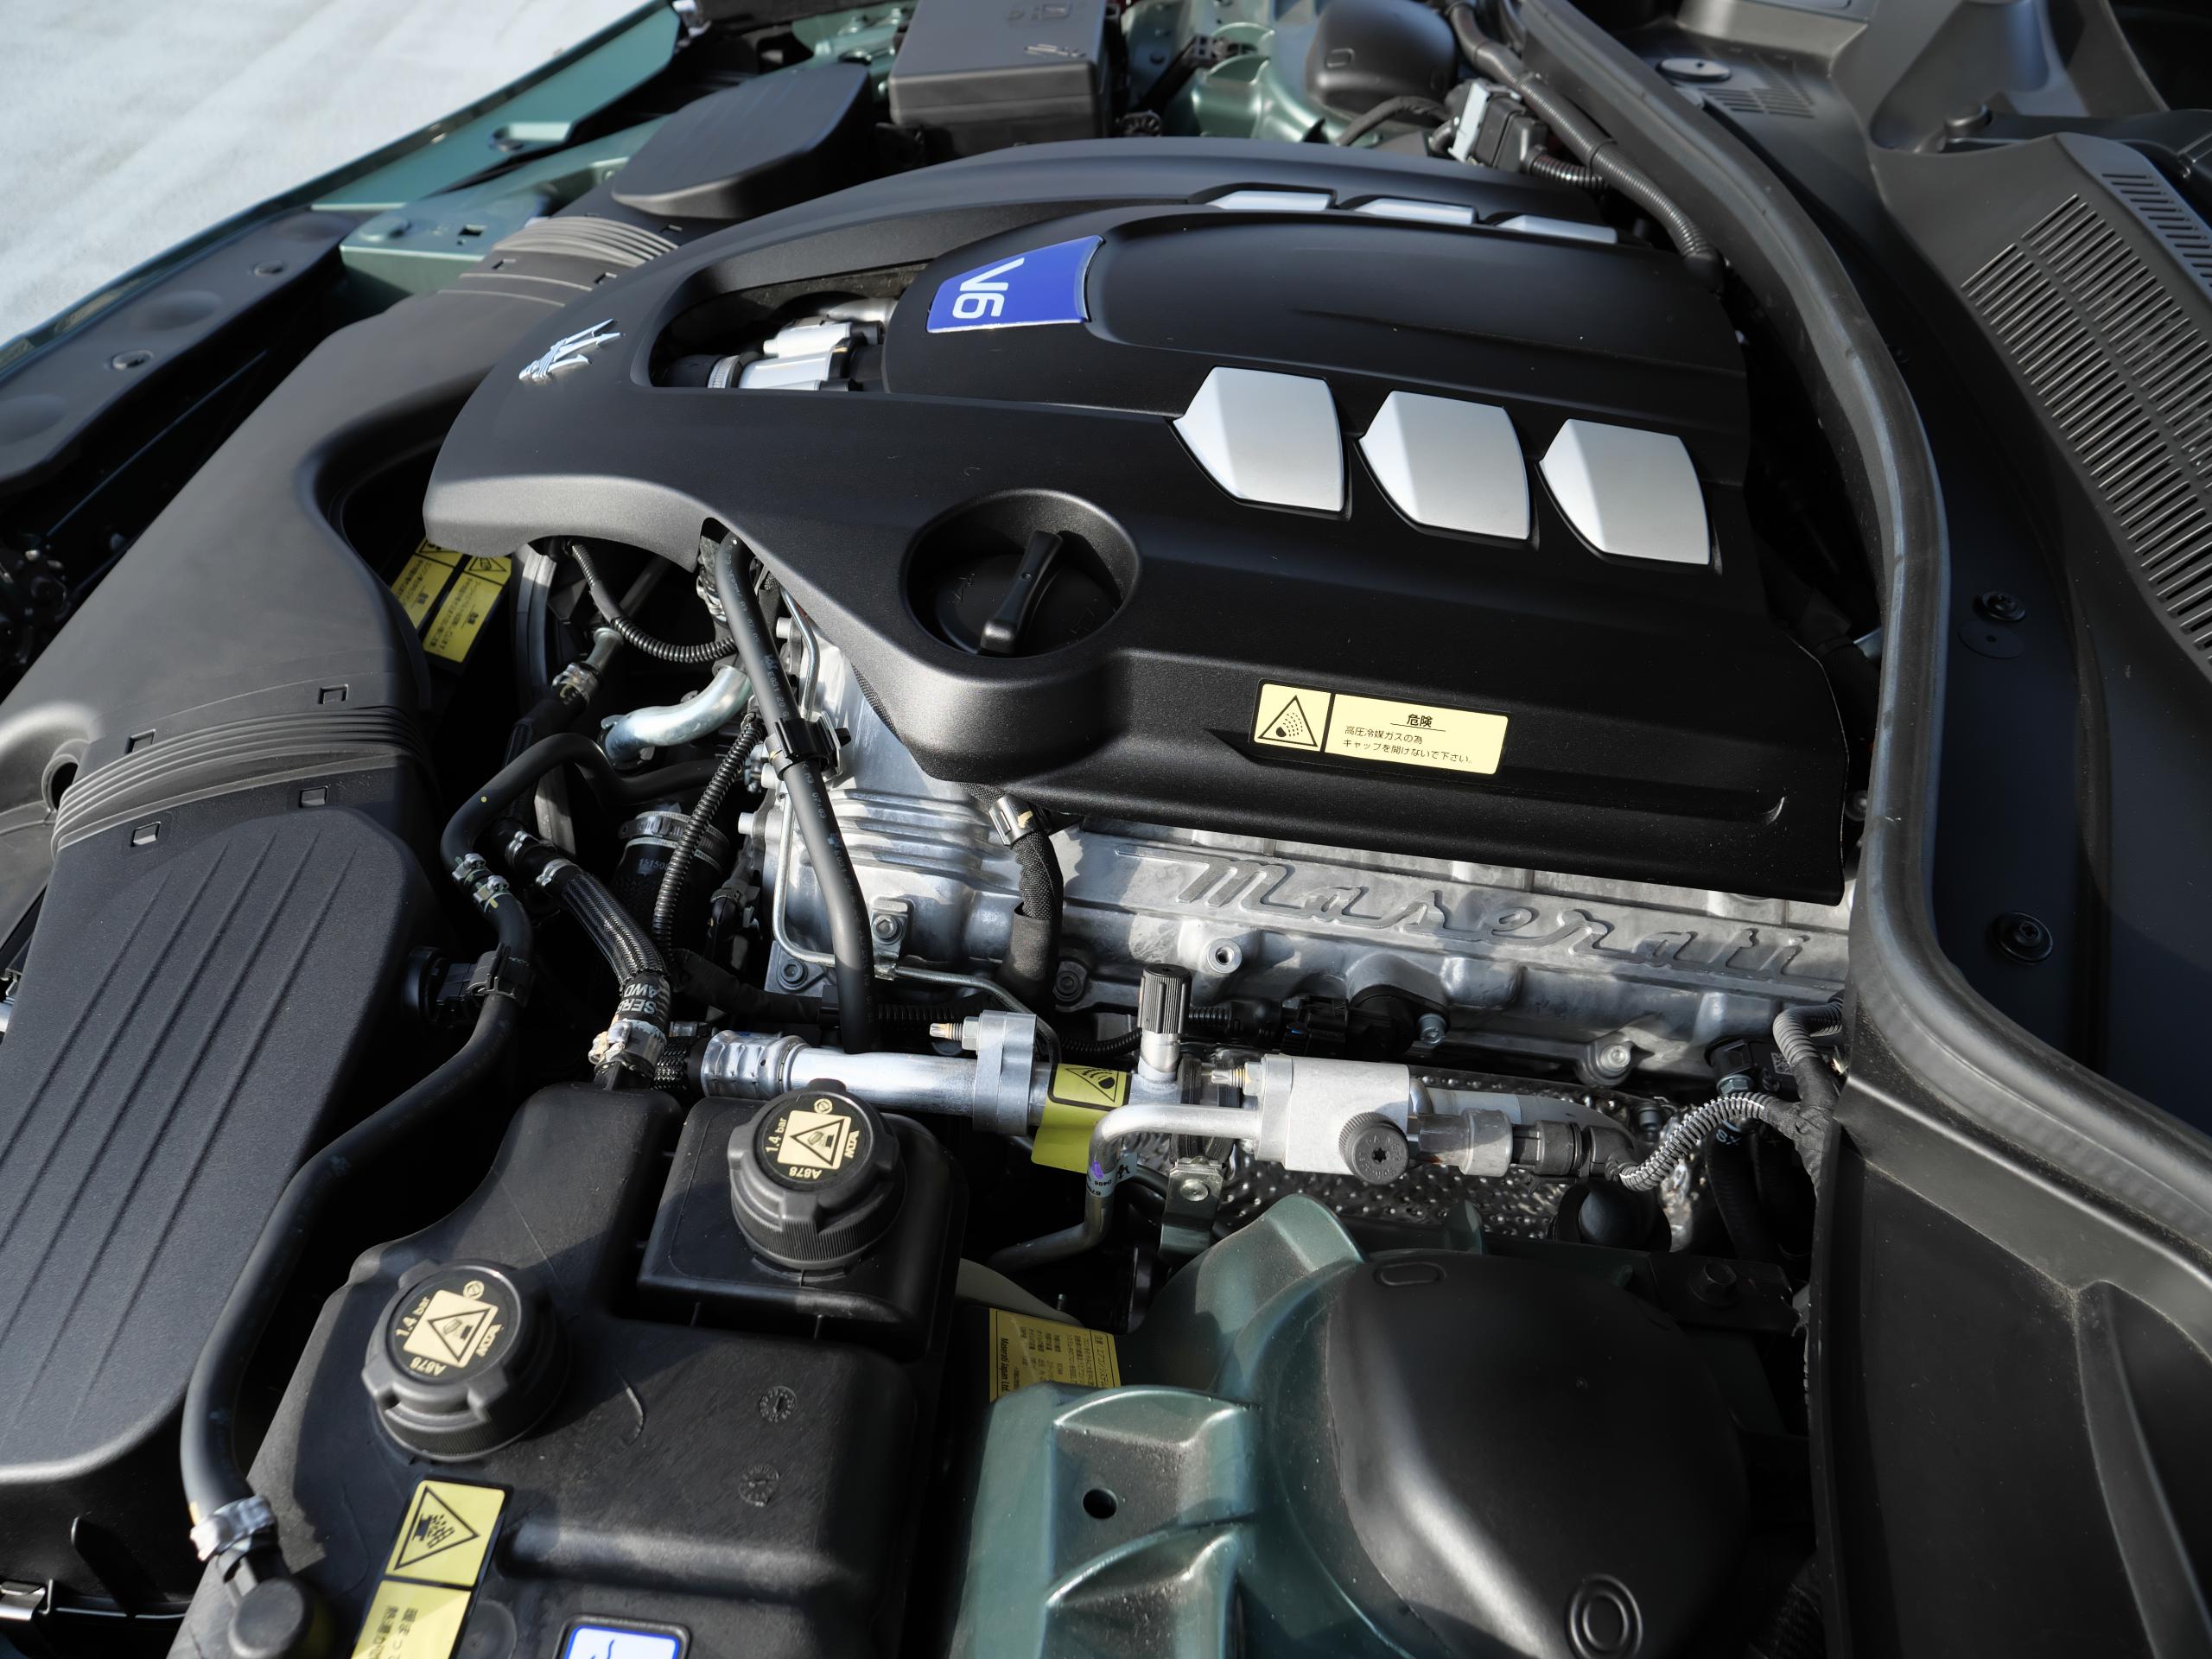 ギブリ S グランルッソ ロイヤルエディション エンジン